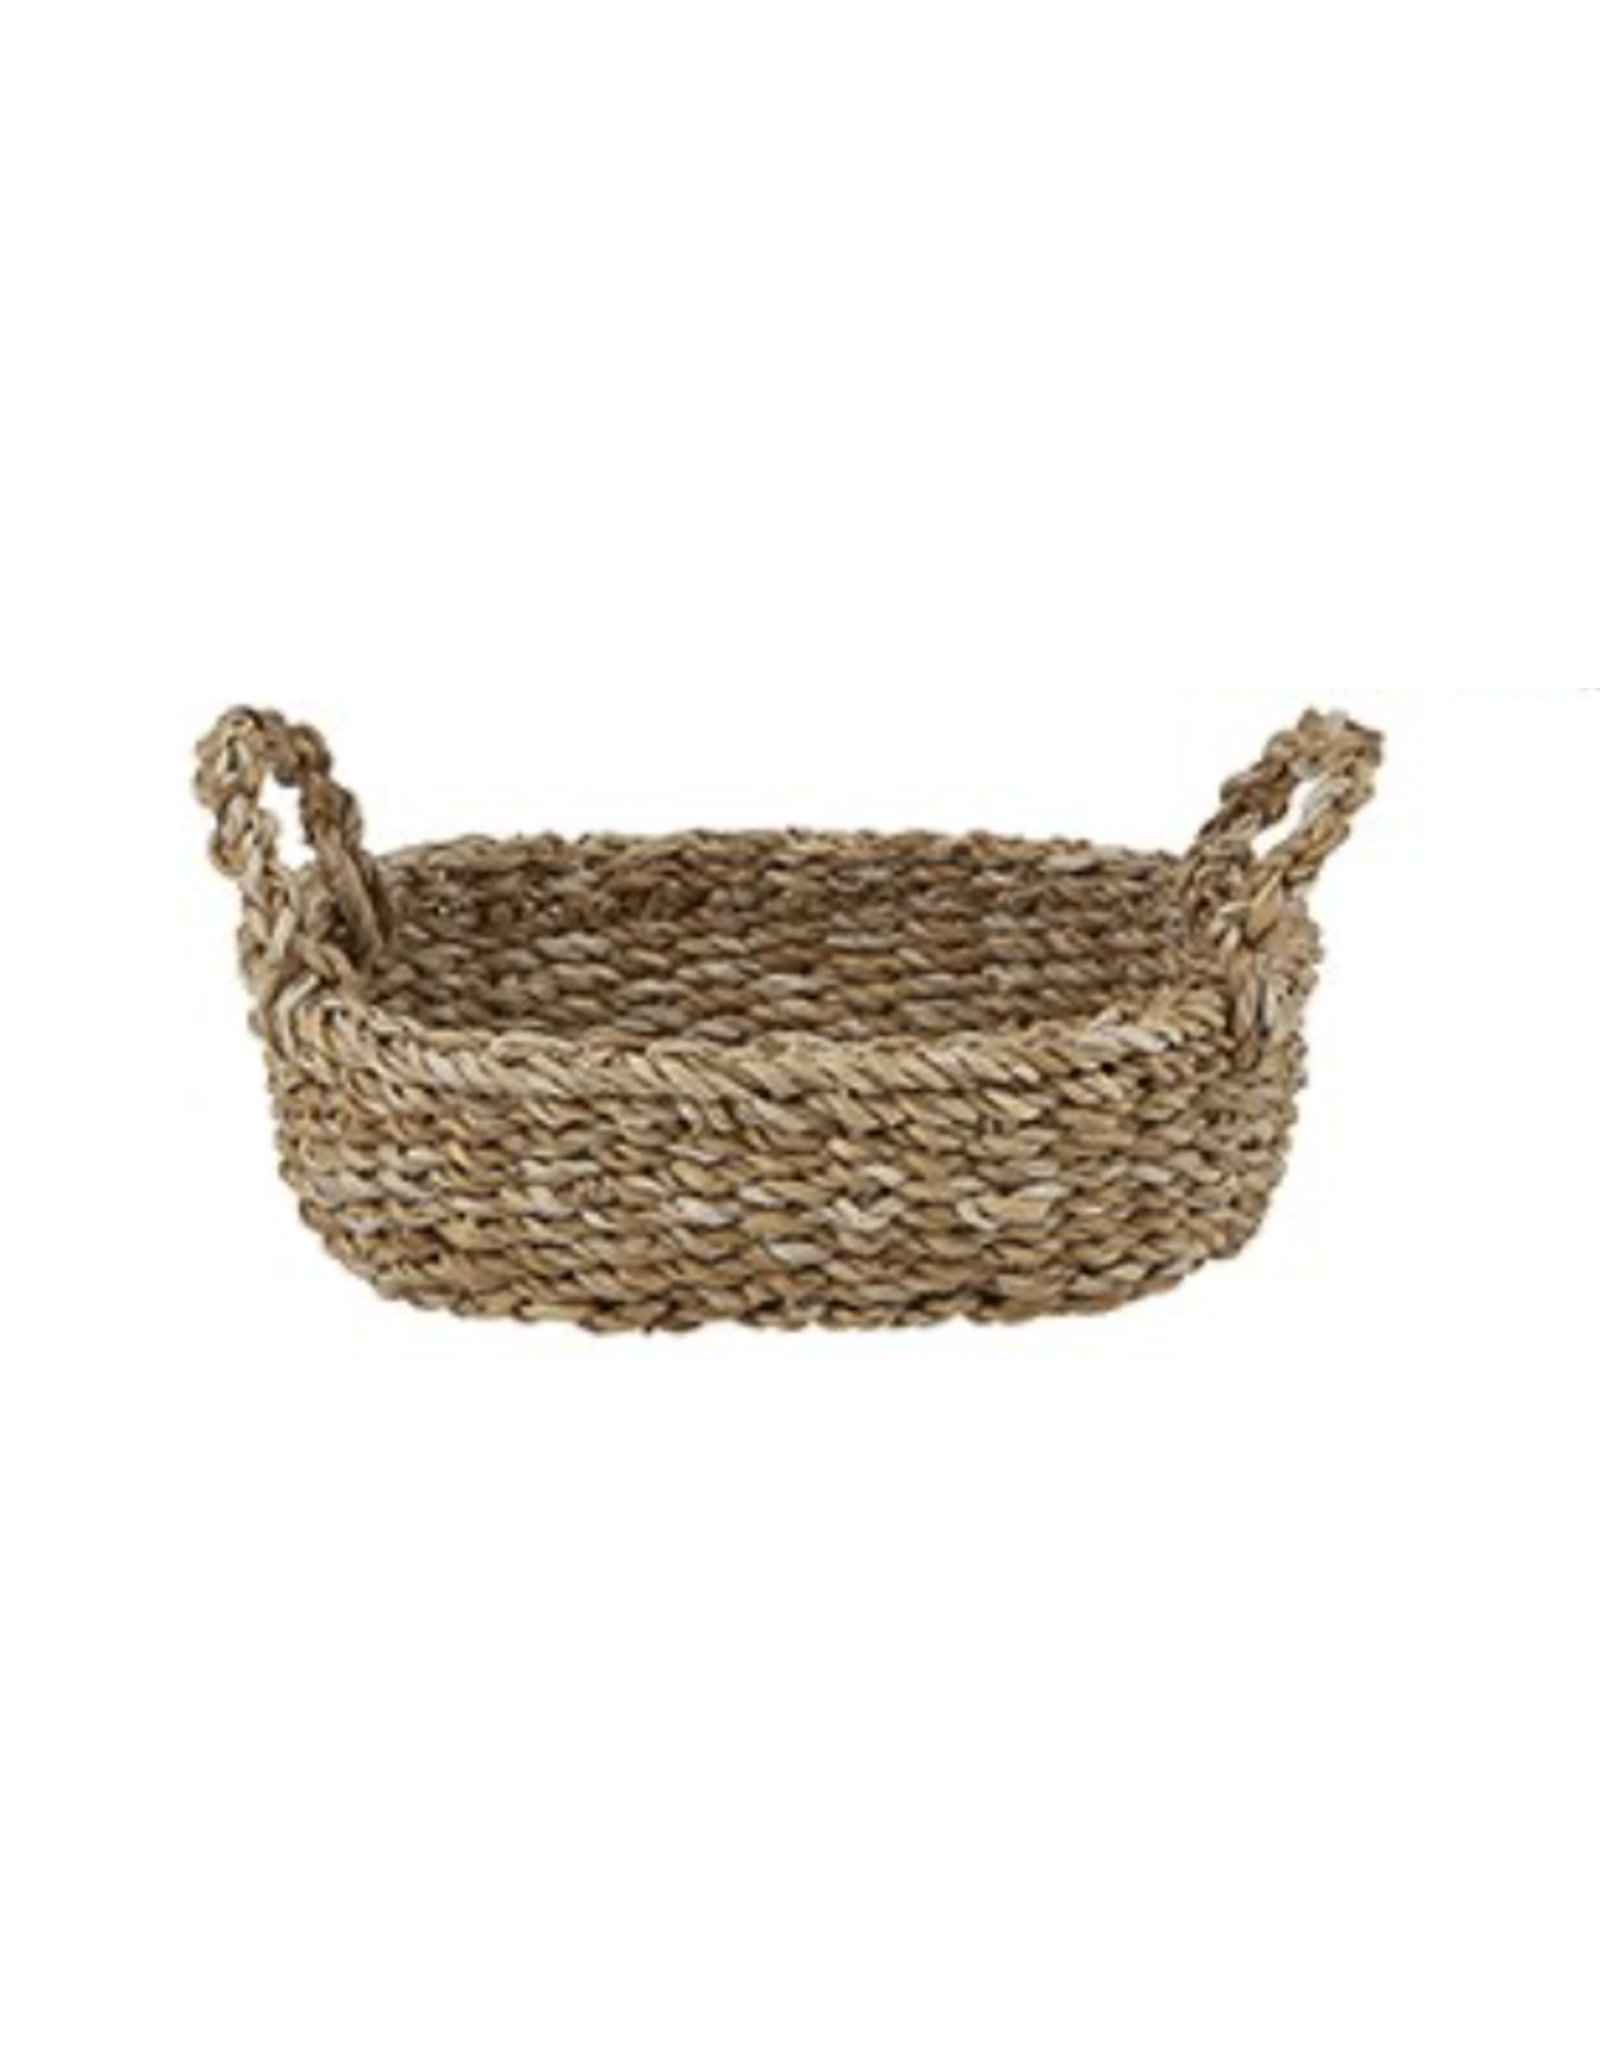 https://cdn.shoplightspeed.com/shops/634143/files/22179439/1600x2048x2/creative-brands-small-seagrass-oval-basket.jpg